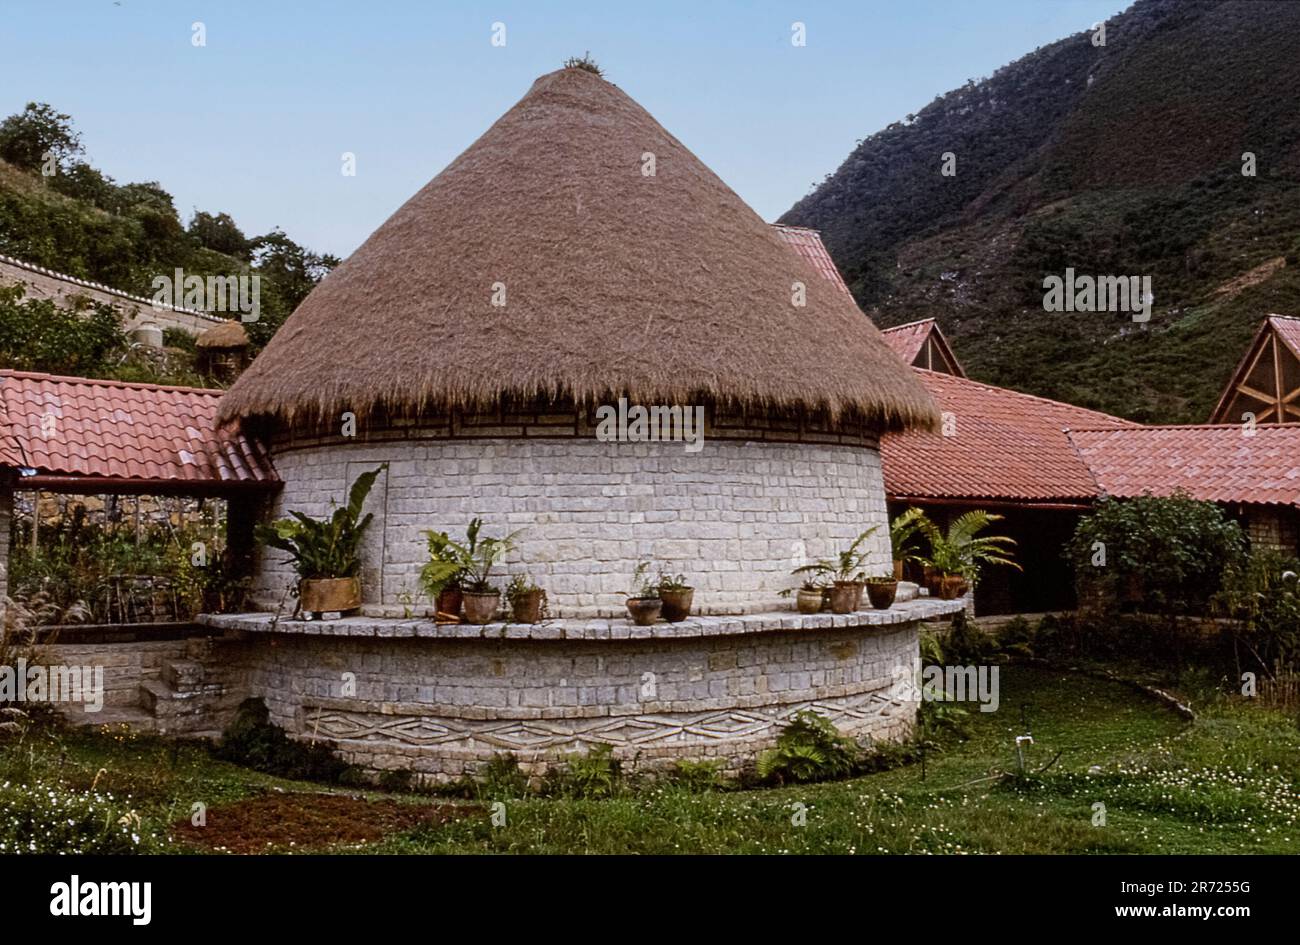 Perù Leymebamb Mallqui centro en Leymebamba - recuperado en 1997 - exterior Foto de stock